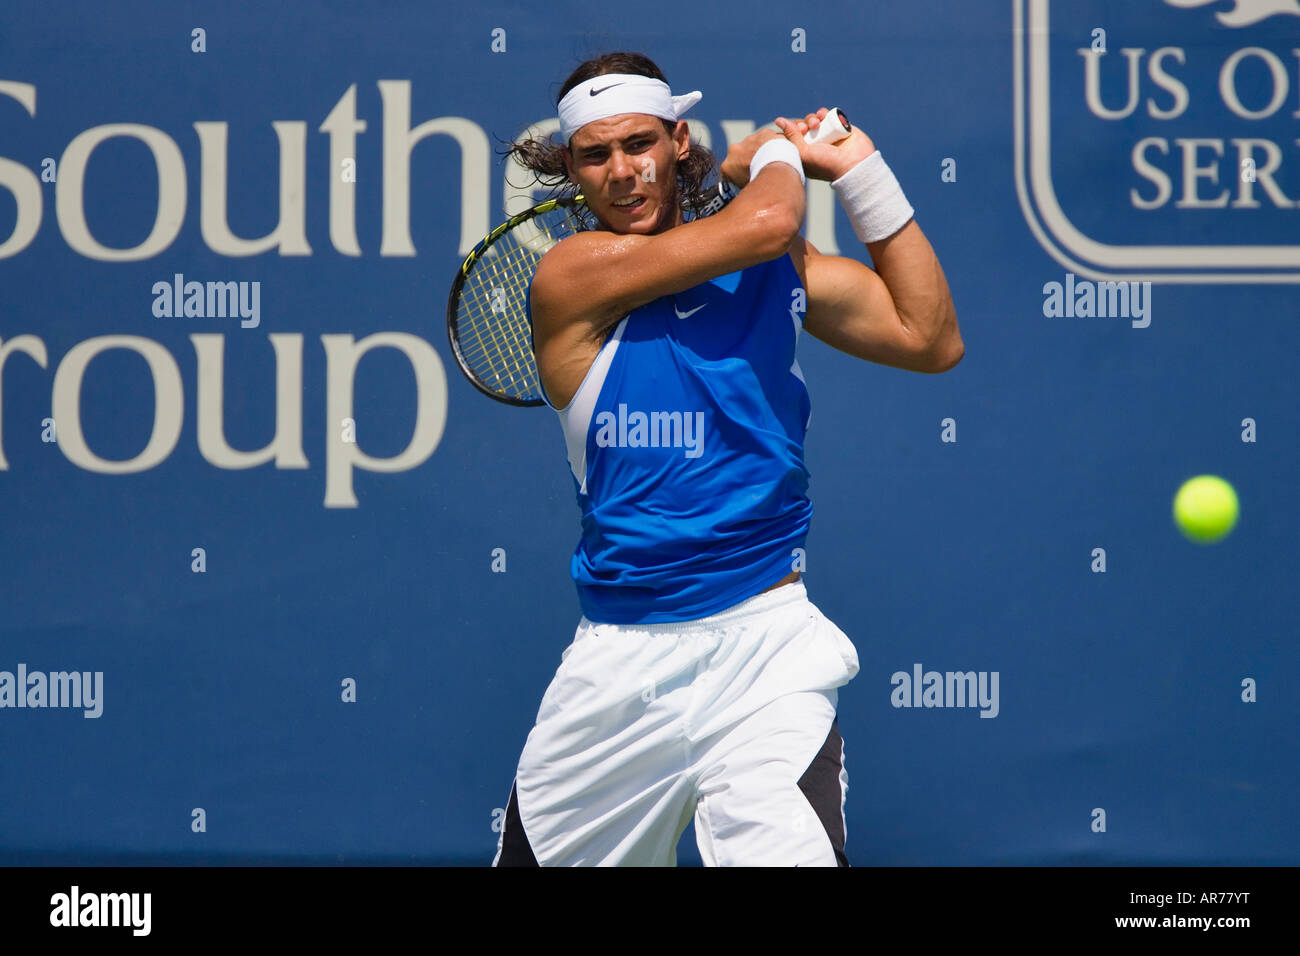 Rafael Nadal uno de los jugadores de tenis ATP superior en acción en el ATP de Cincinnati en preparación para el US Open. Foto de stock